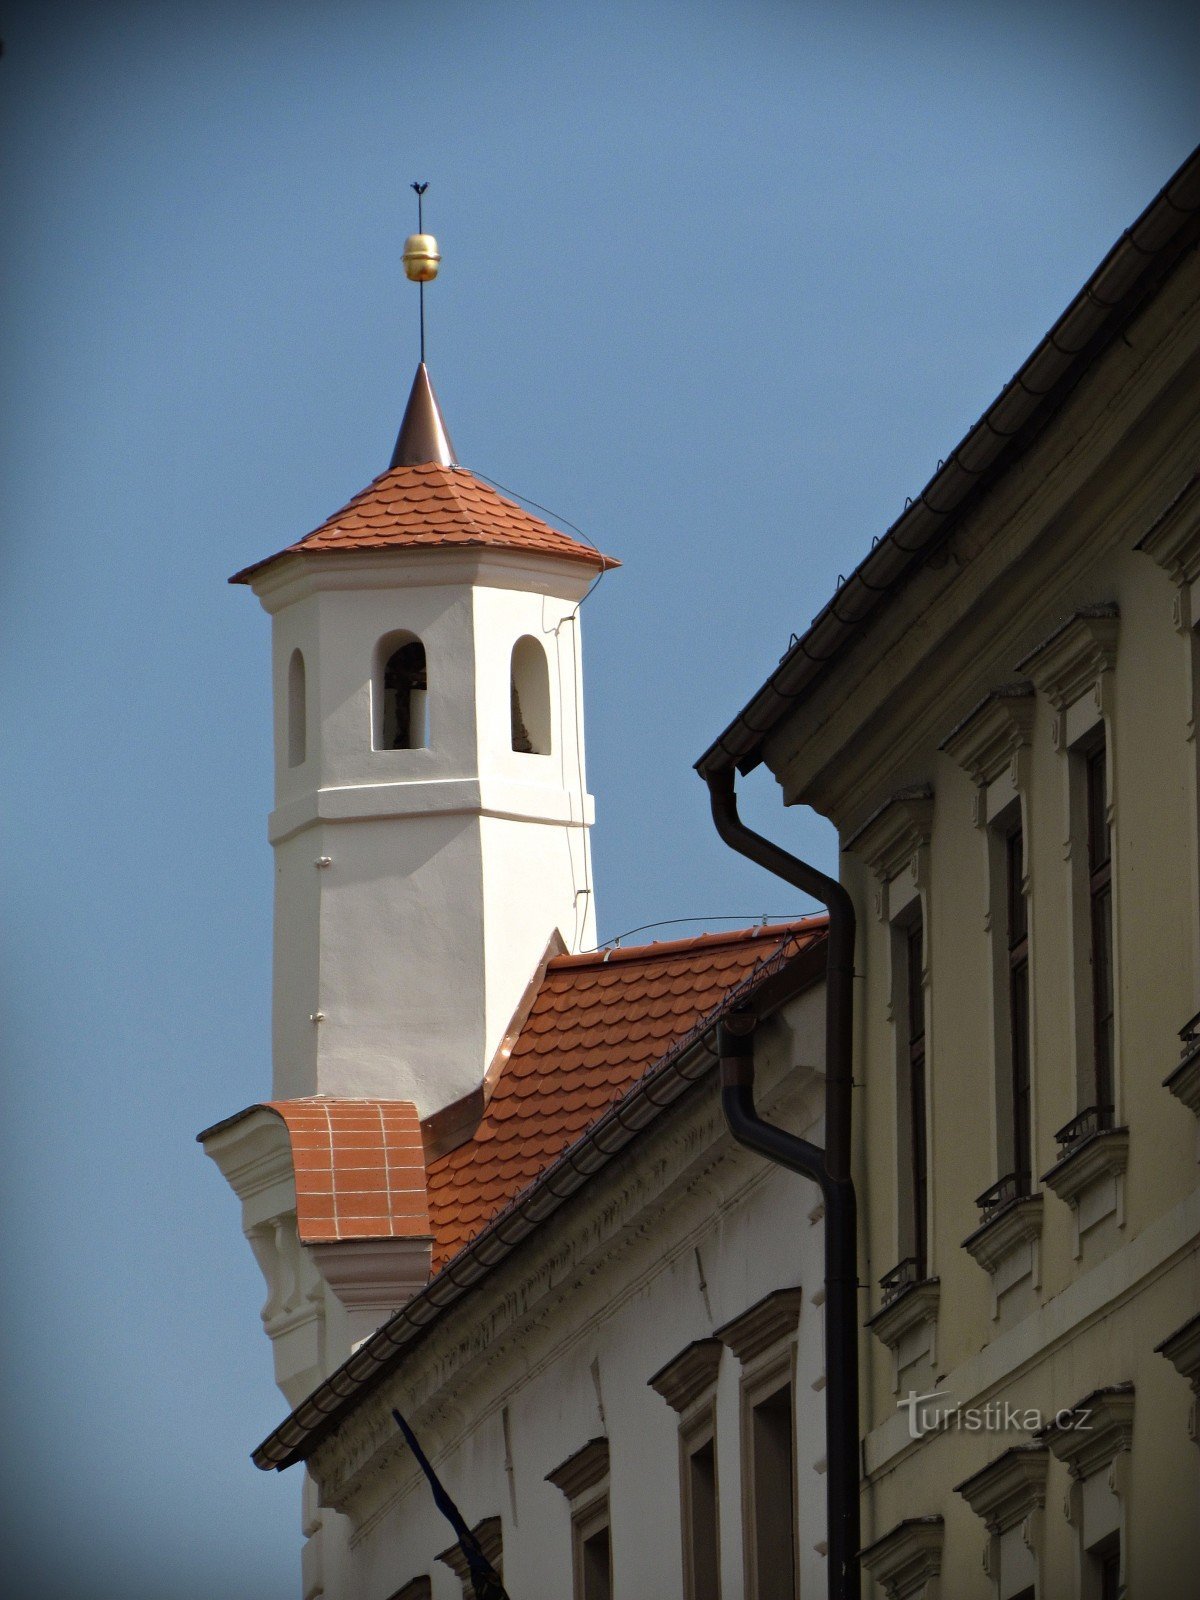 Una visita al castello e una passeggiata attraverso Slavkov vicino a Brno